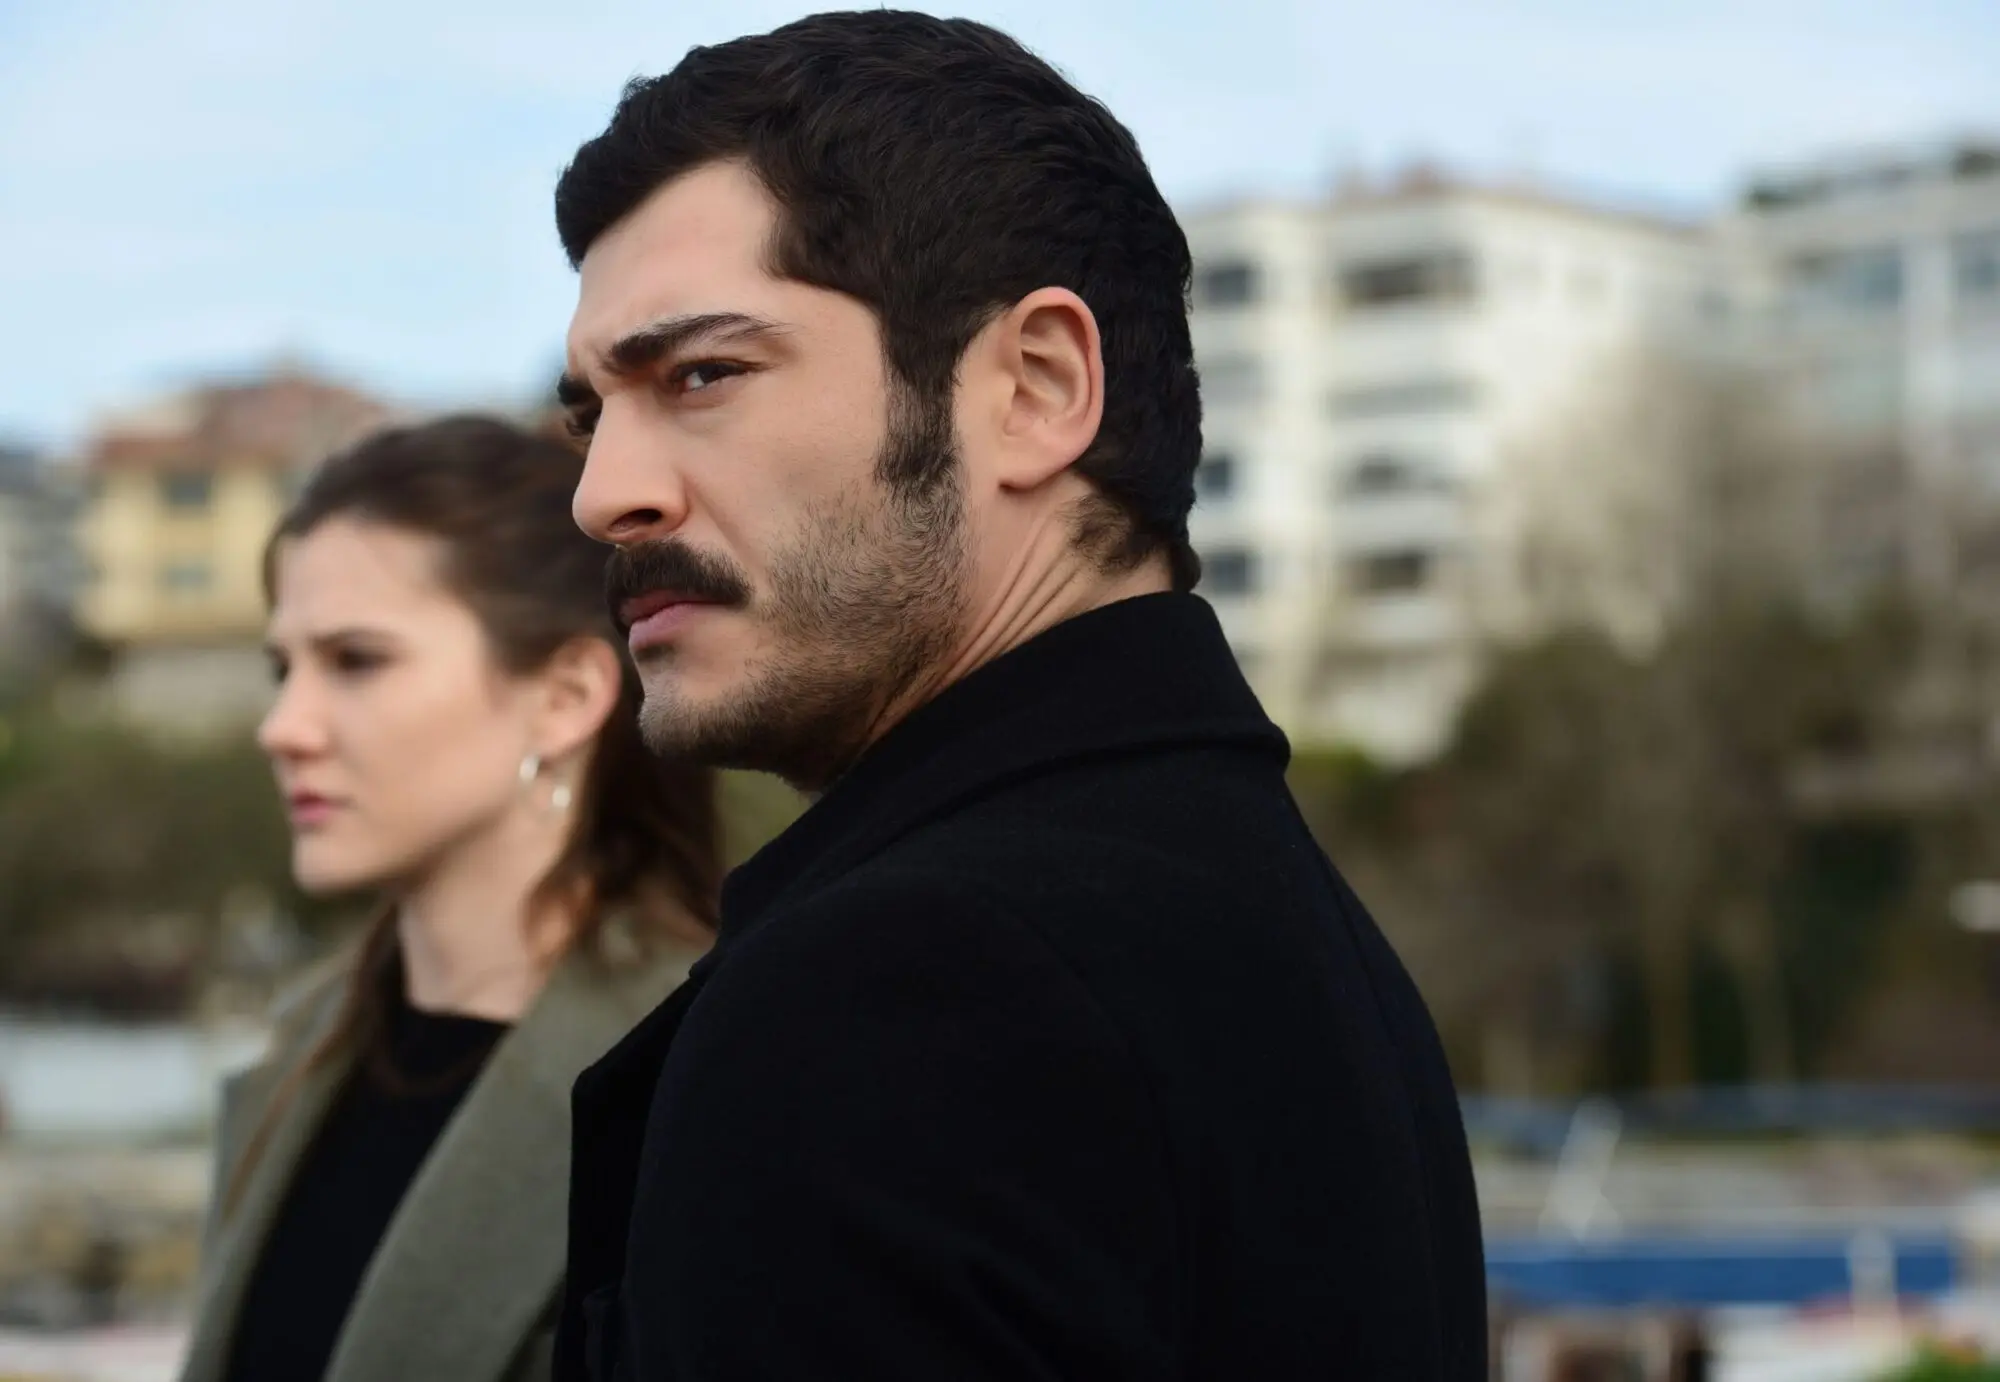 Marasli: O Protetor | Conheça a novela turca que estreia no globoplay 10